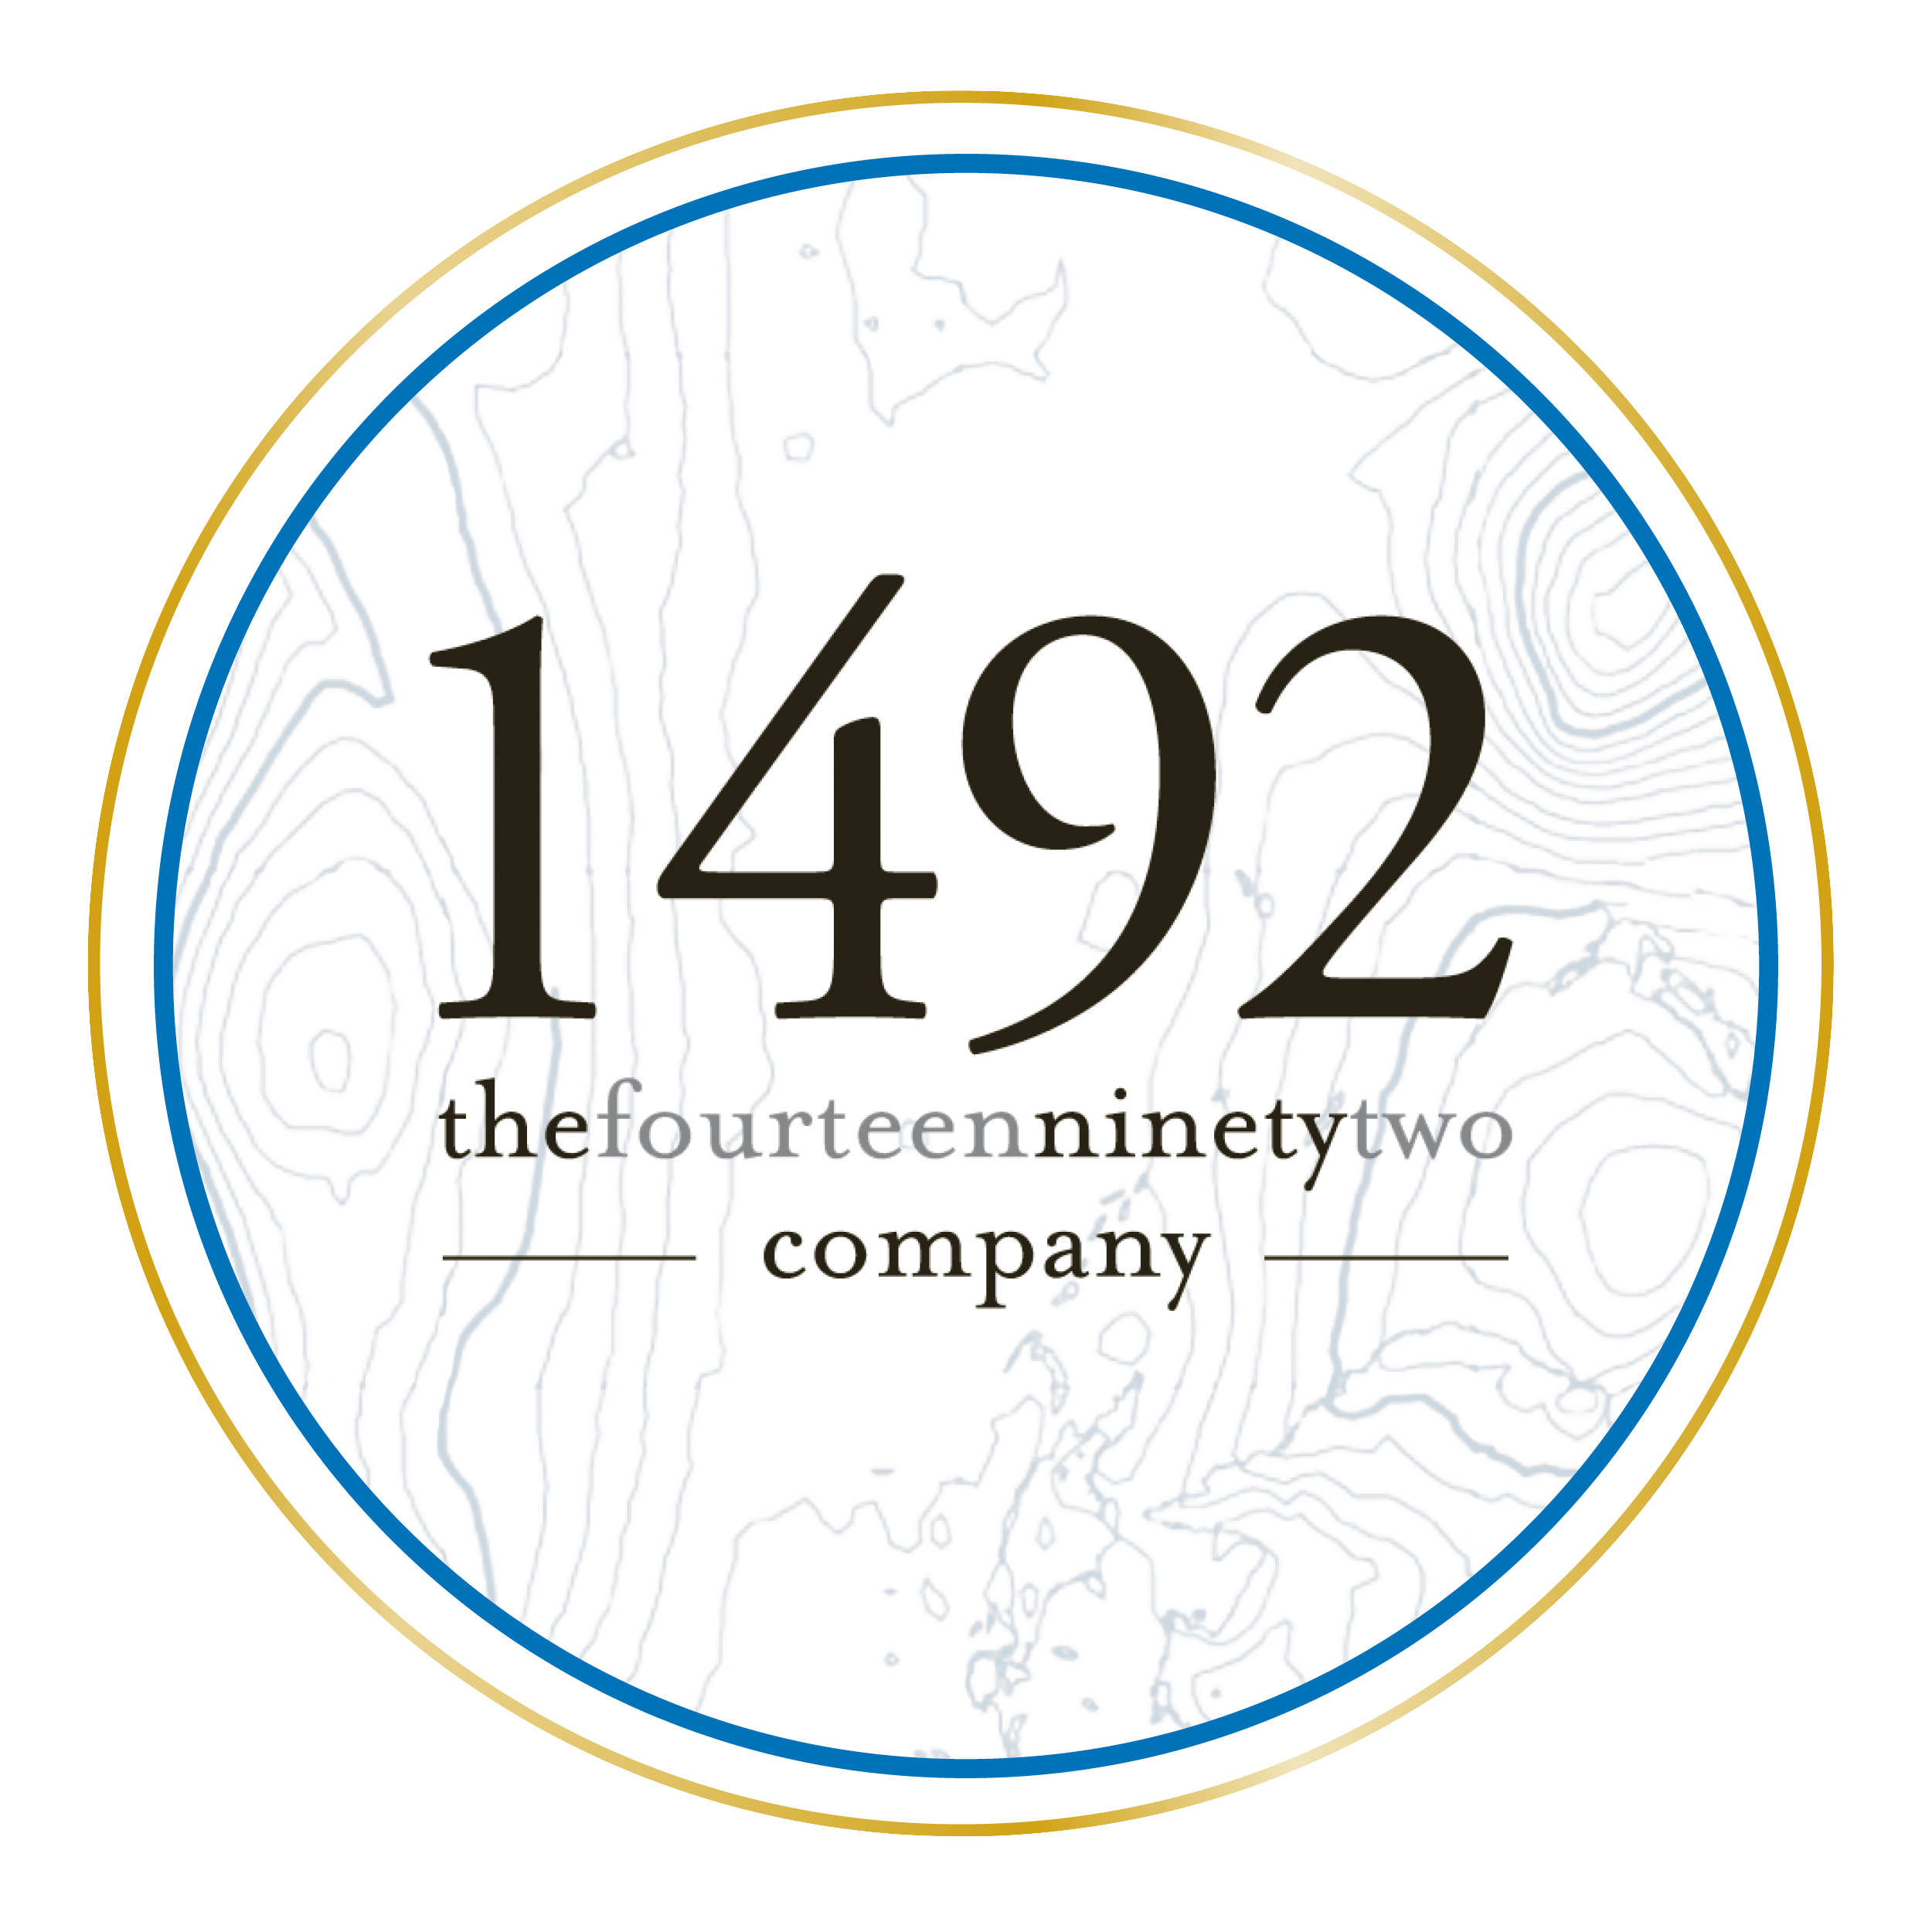 The 1492 Company